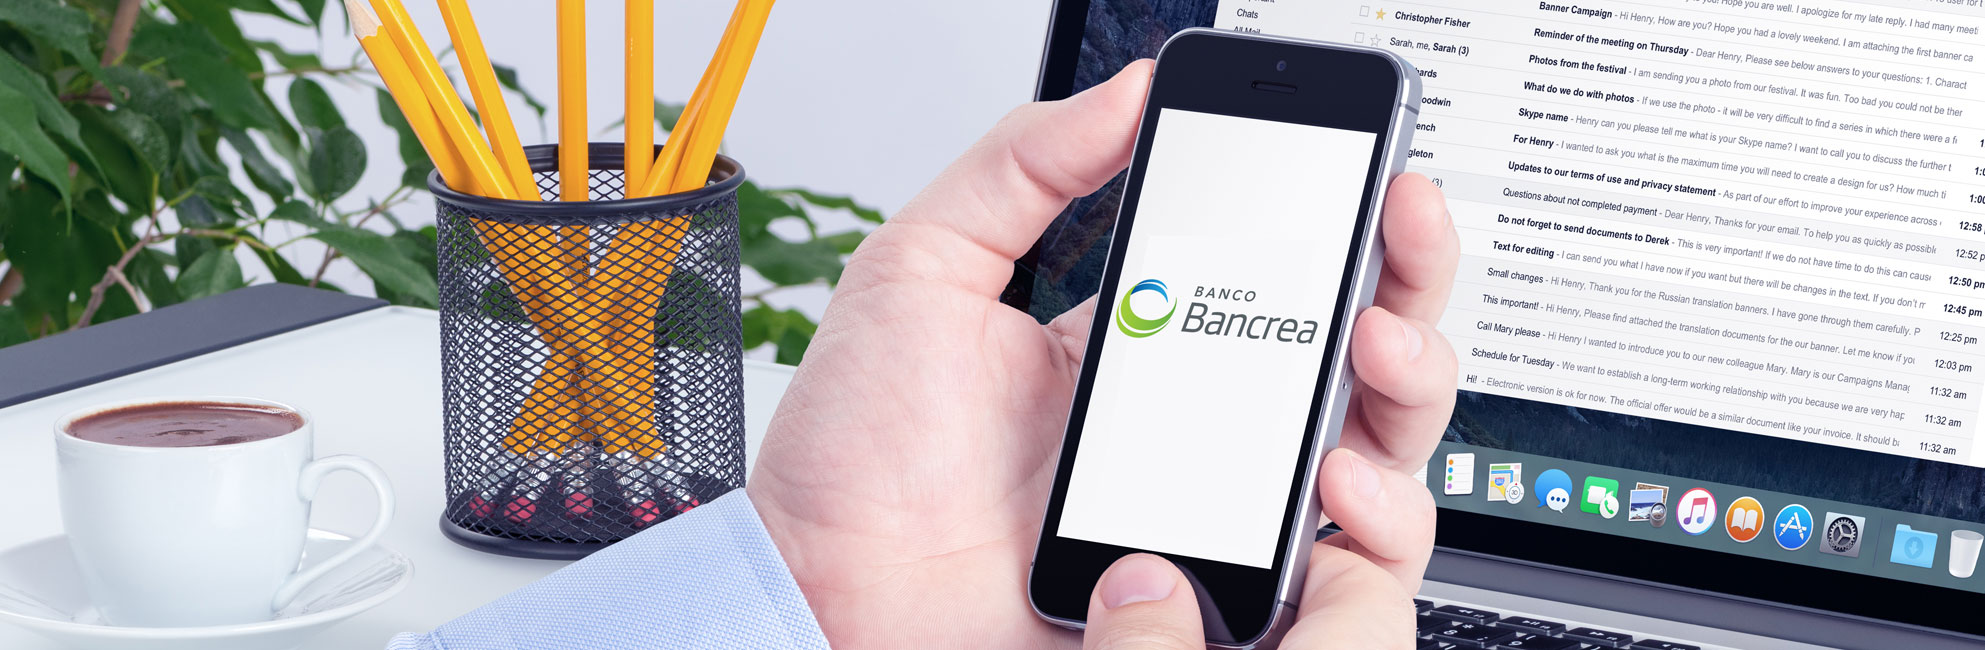 Open Banking Bancrea